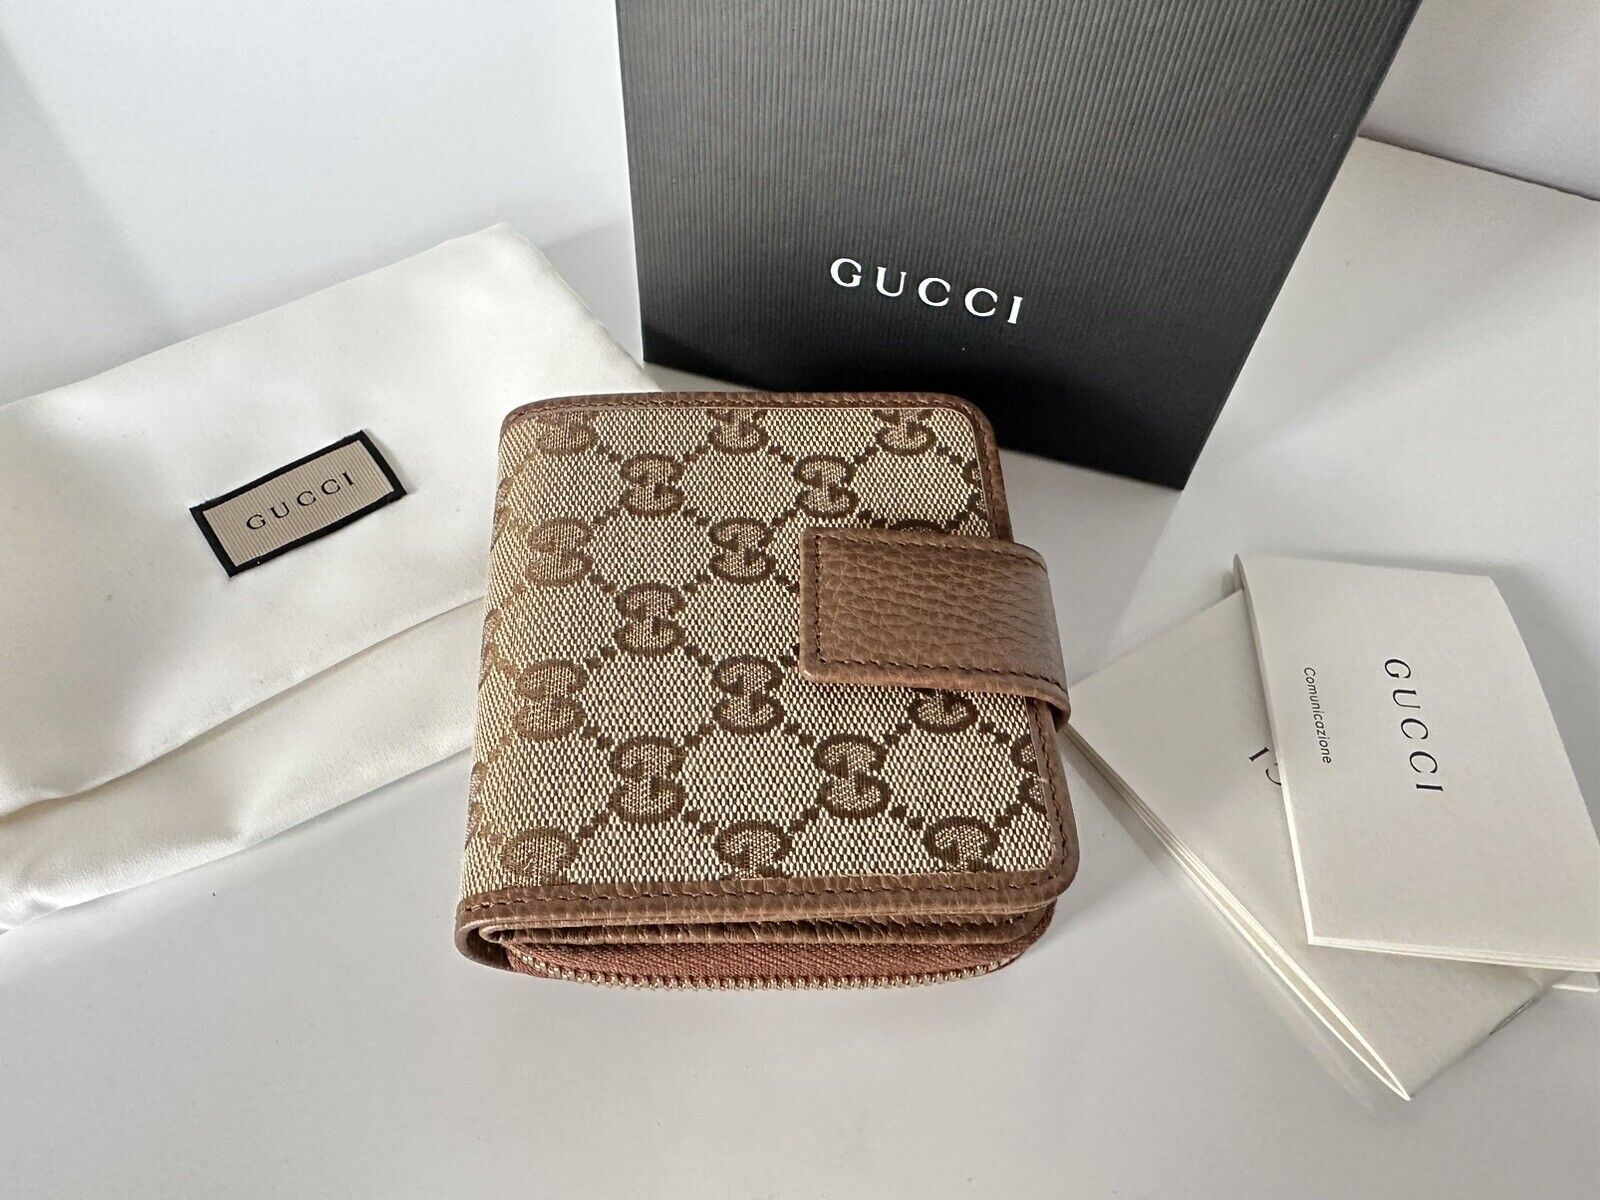 NIB Gucci GG Dollar Leder/Canvas Braunes französisches Portemonnaie mit umlaufendem Reißverschluss 346056 